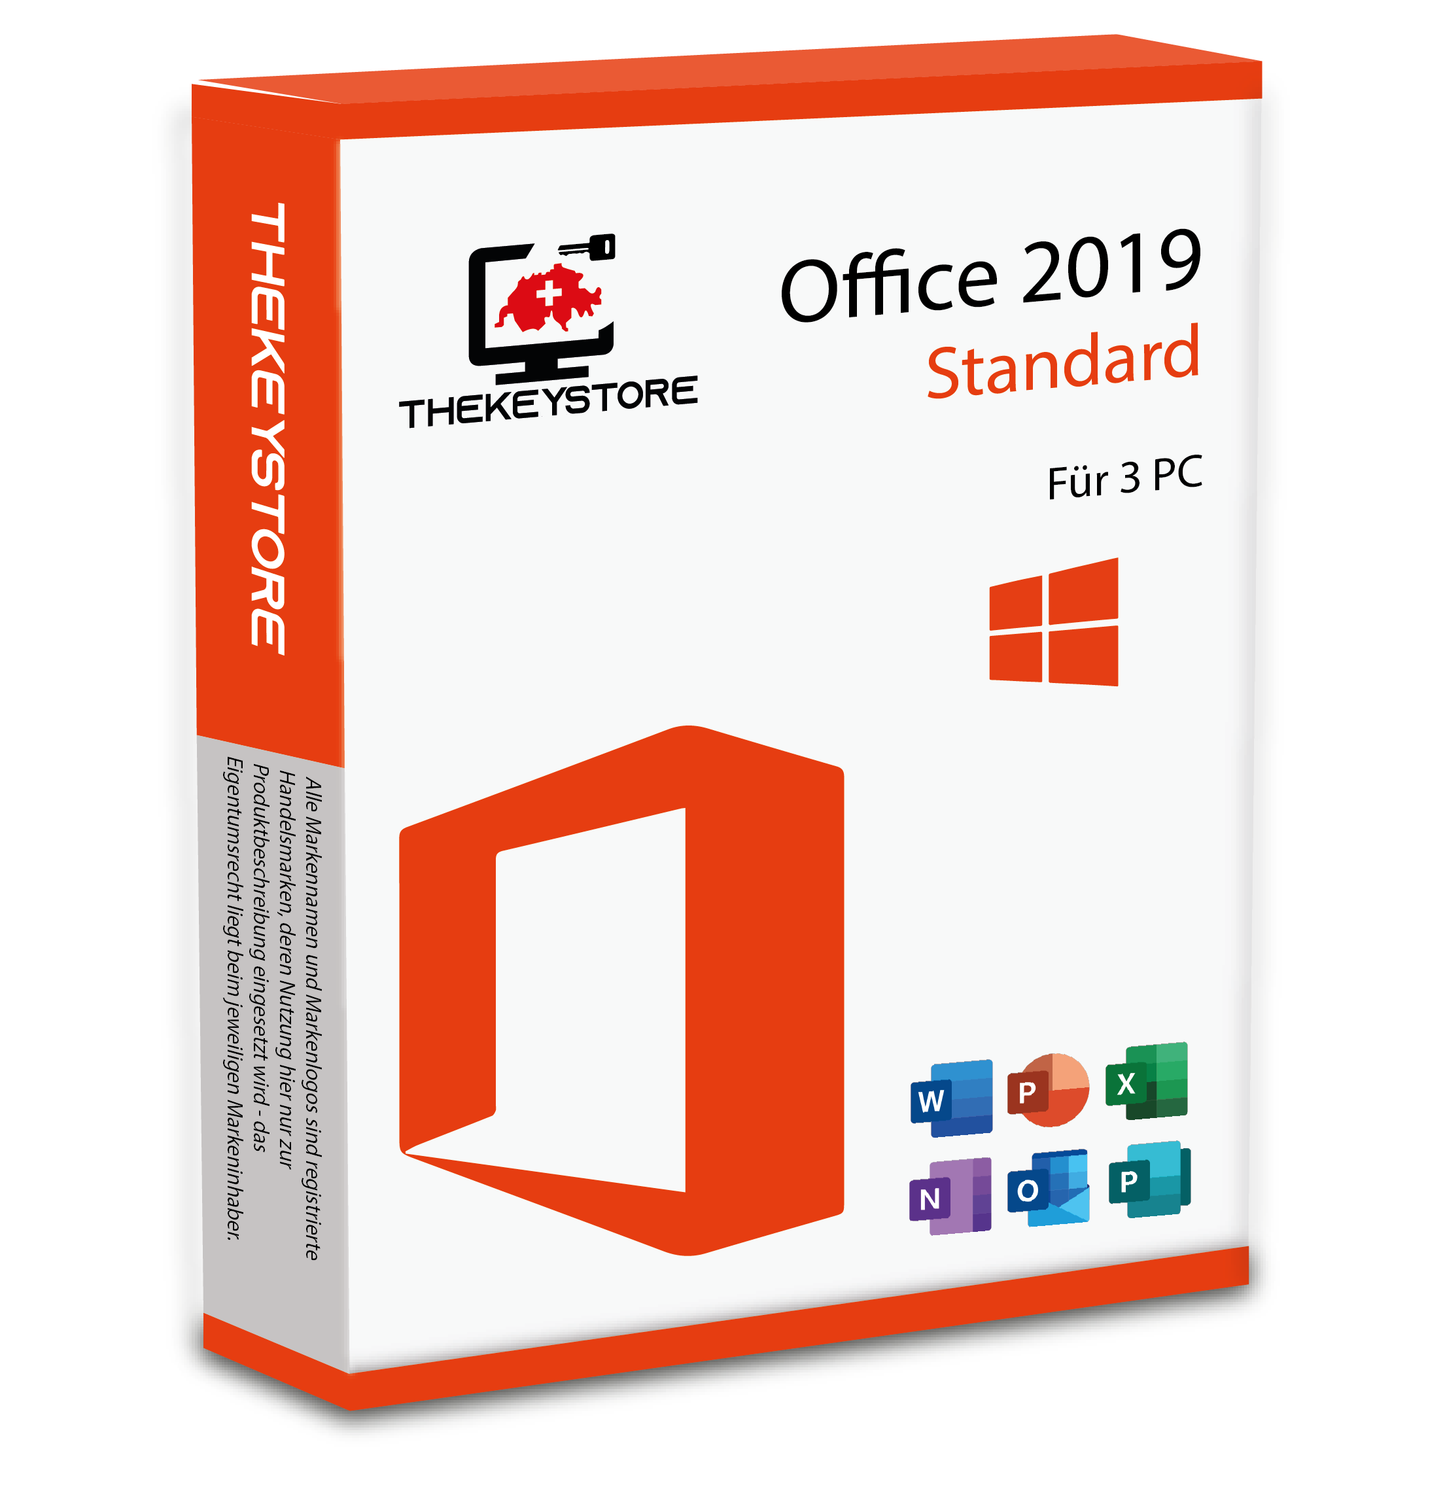 Microsoft Office 2019 Standard - Für 3 PC - TheKeyStore Schweiz